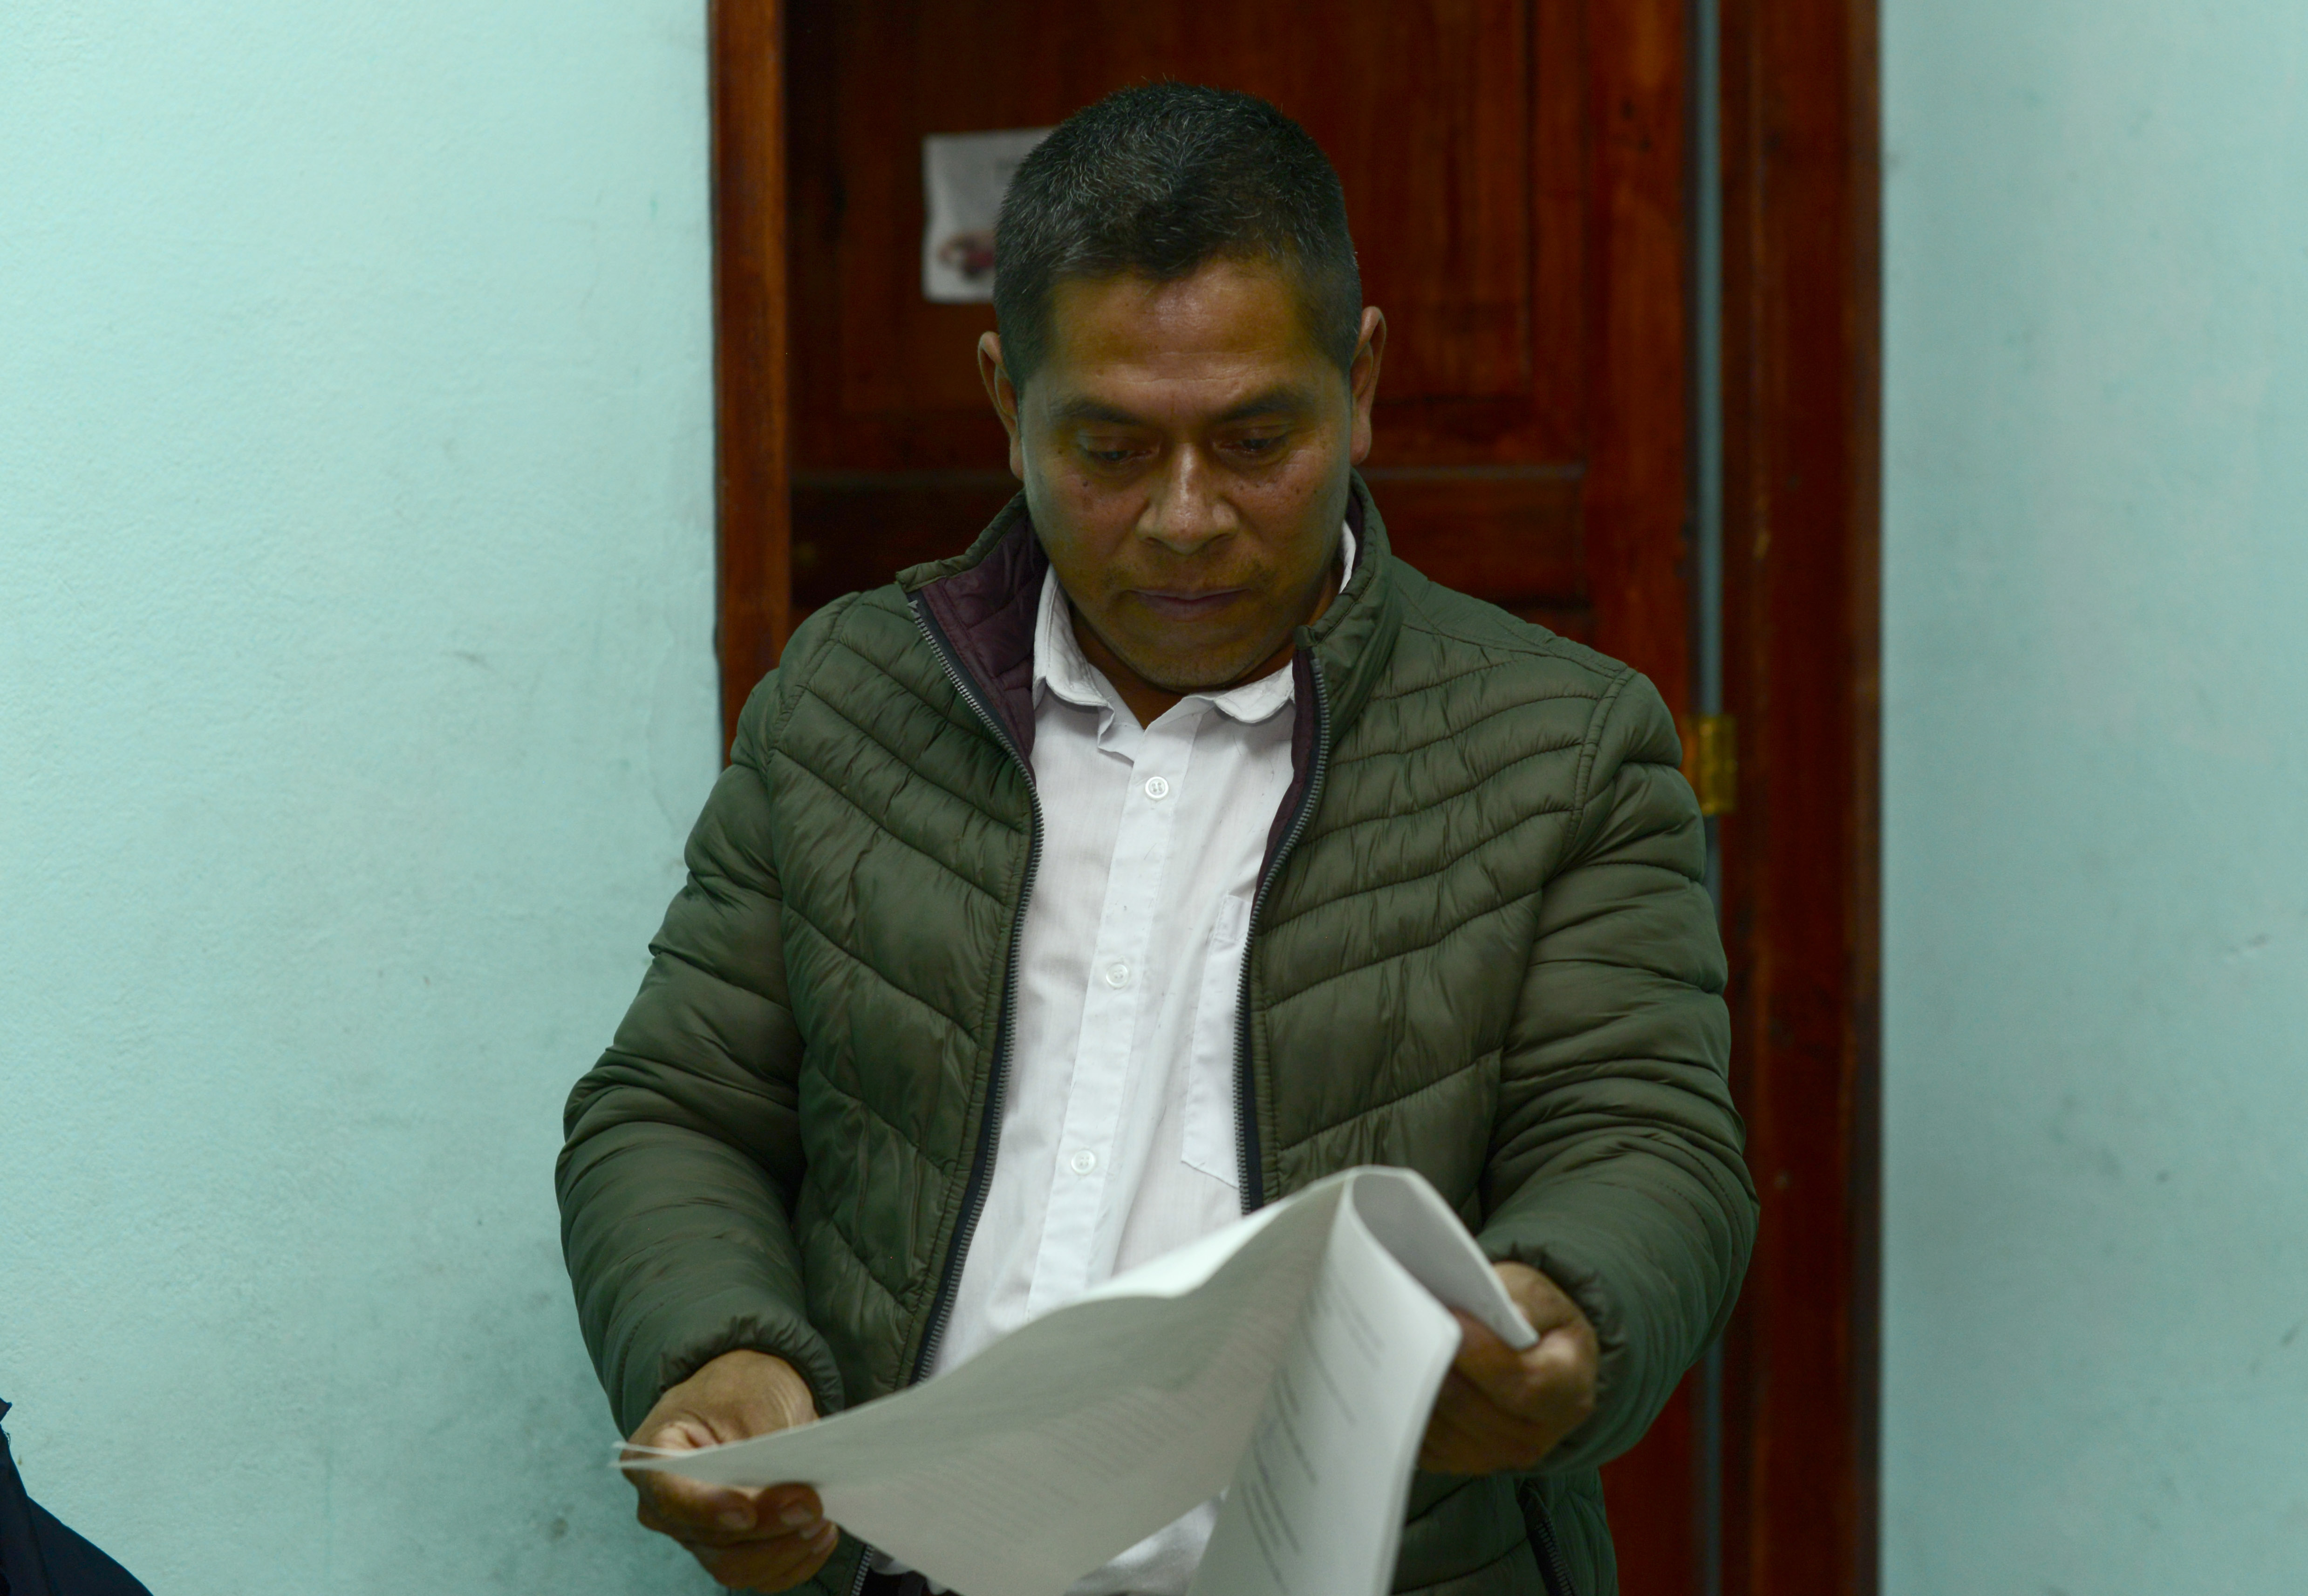 TTranscurridas 96 quincenas de descuentos, Abundio Cuahua había pagado a la financiera 270 mil pesos, más del doble de lo que había pedido prestado –120 mil pesos–.